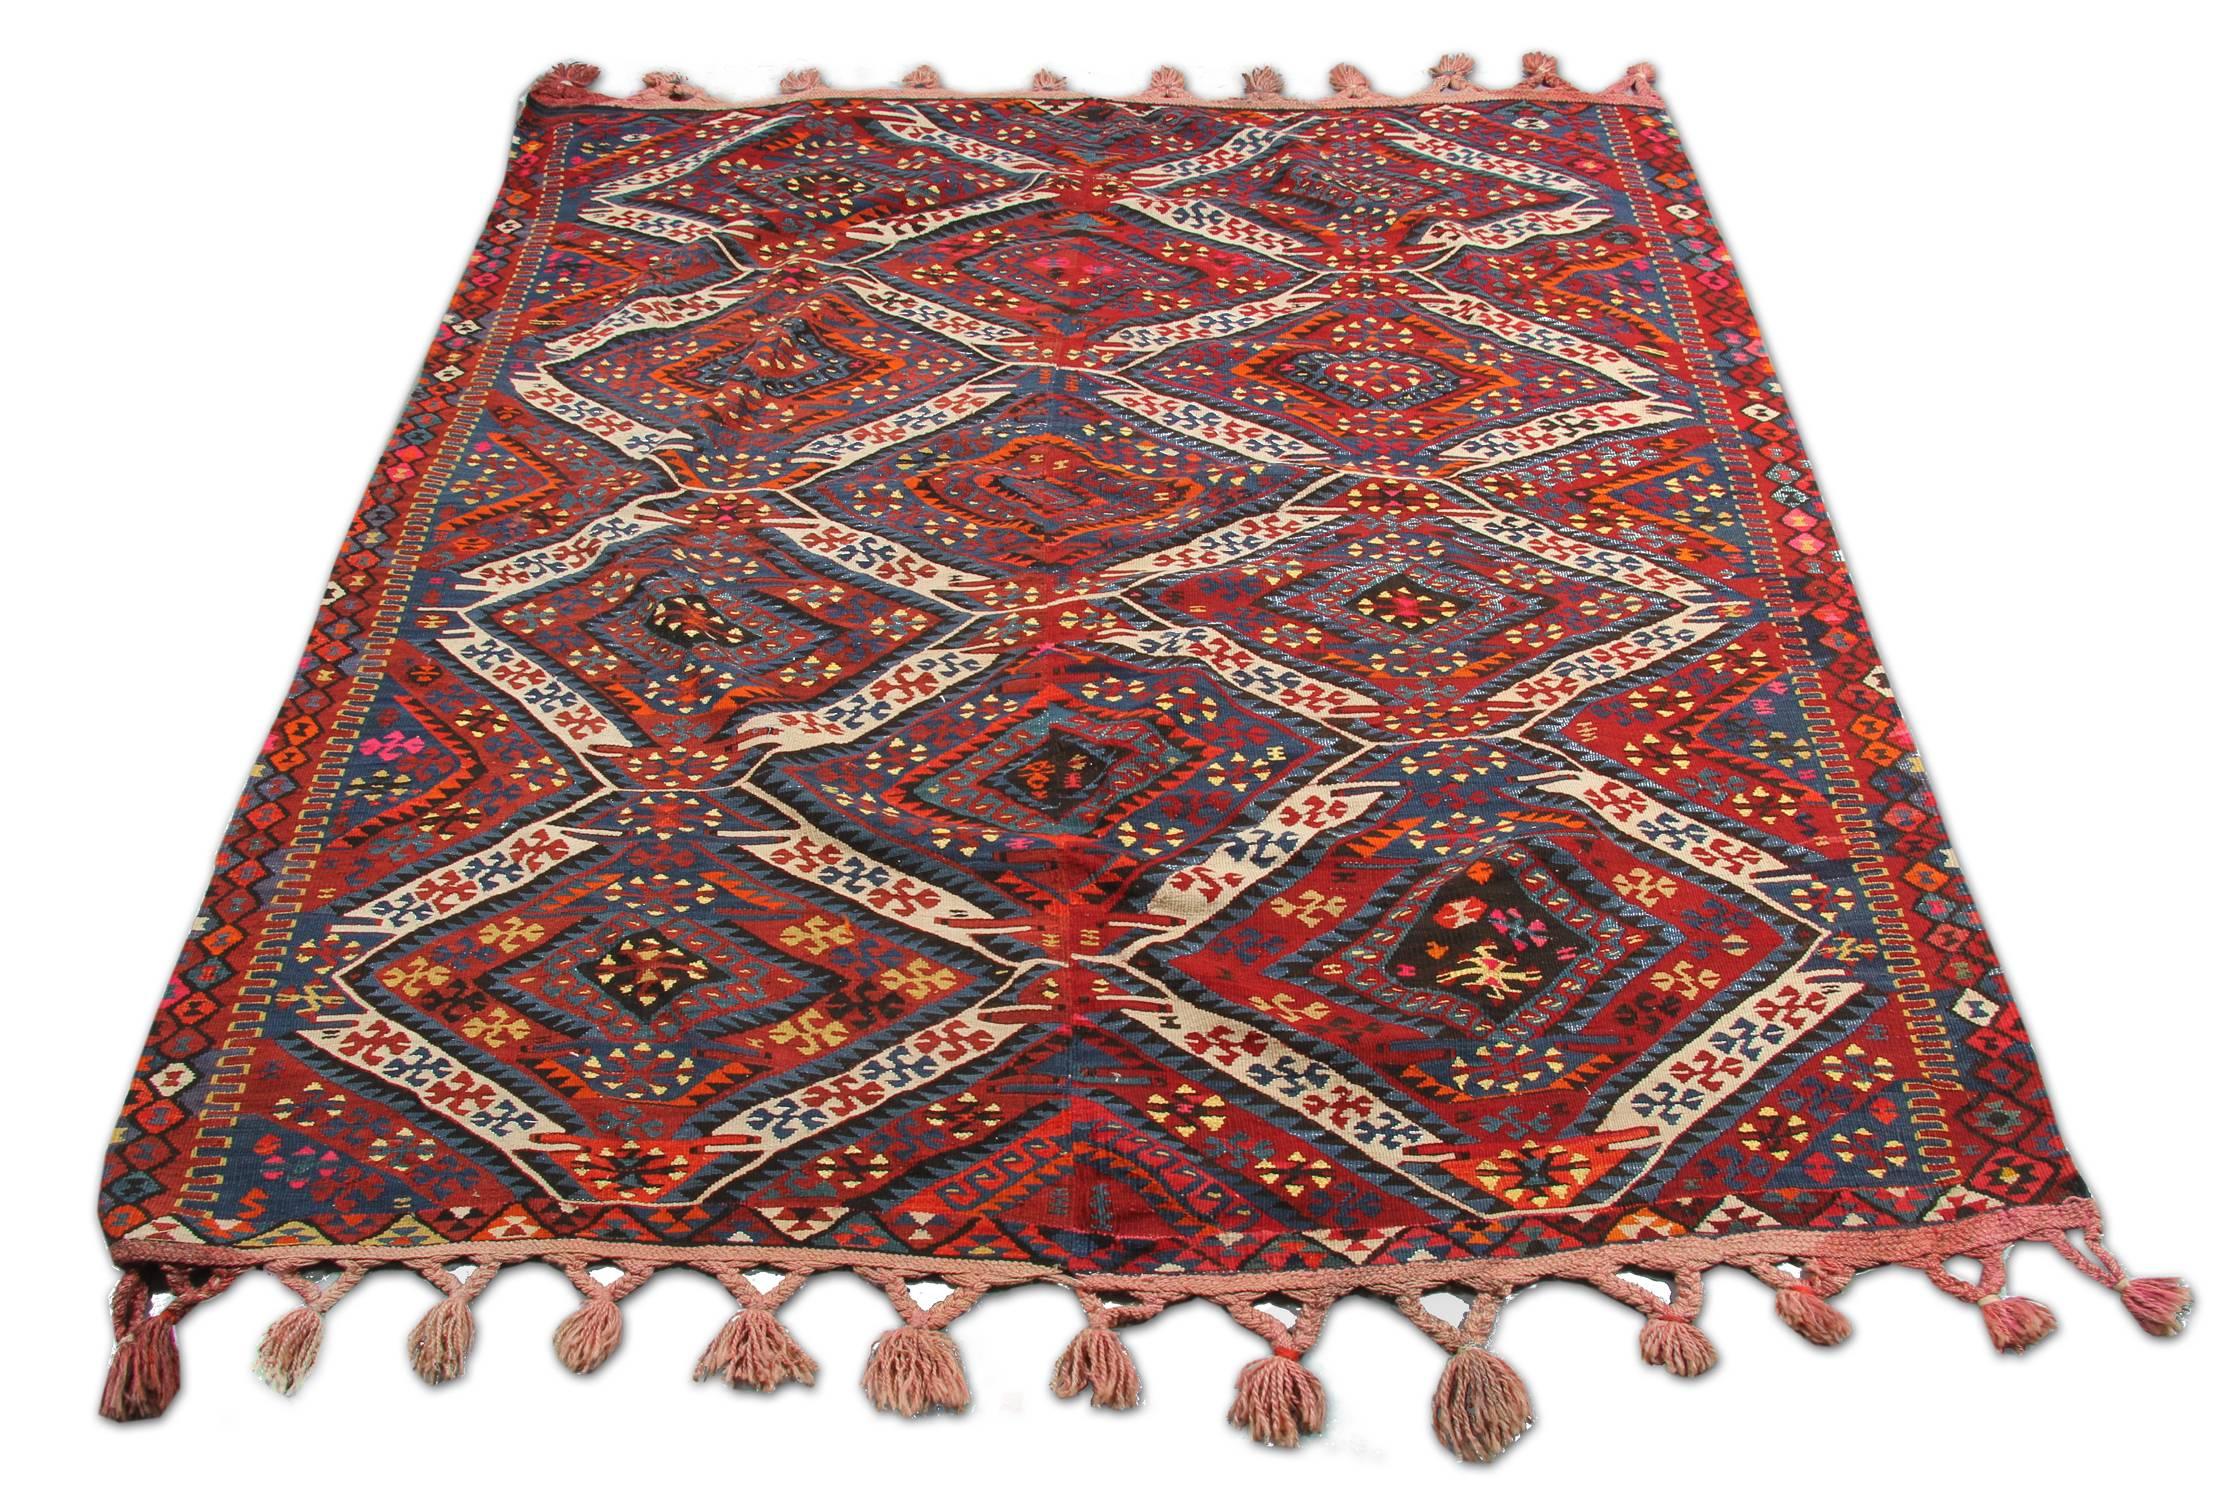 Très beau tapis kilim turc ancien tissé à la main, il a une très belle combinaison de couleurs et a de la laine filée en métal dessus, ce tapis kilim vient d'Anatolie au 19ème siècle et il s'accorde très bien avec la décoration traditionnelle. Ce